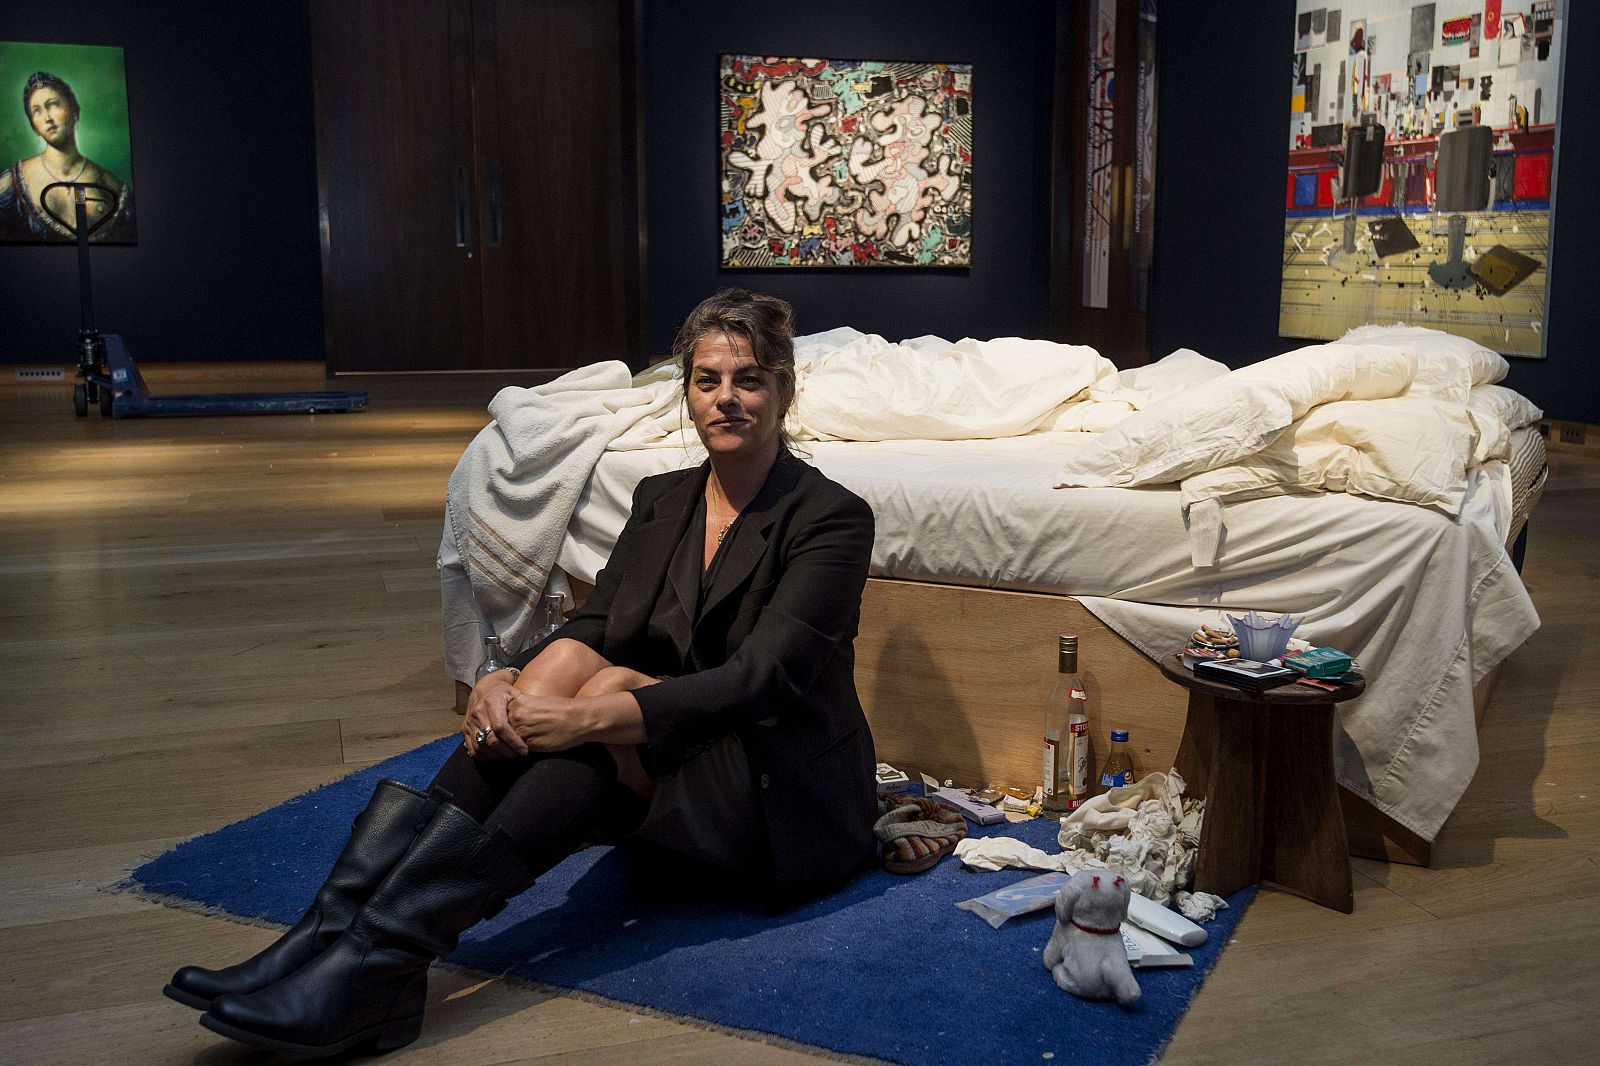 La artista británica Tracey Emin posa ante "My Bed", obra subastada por la casa Christie's este martes.